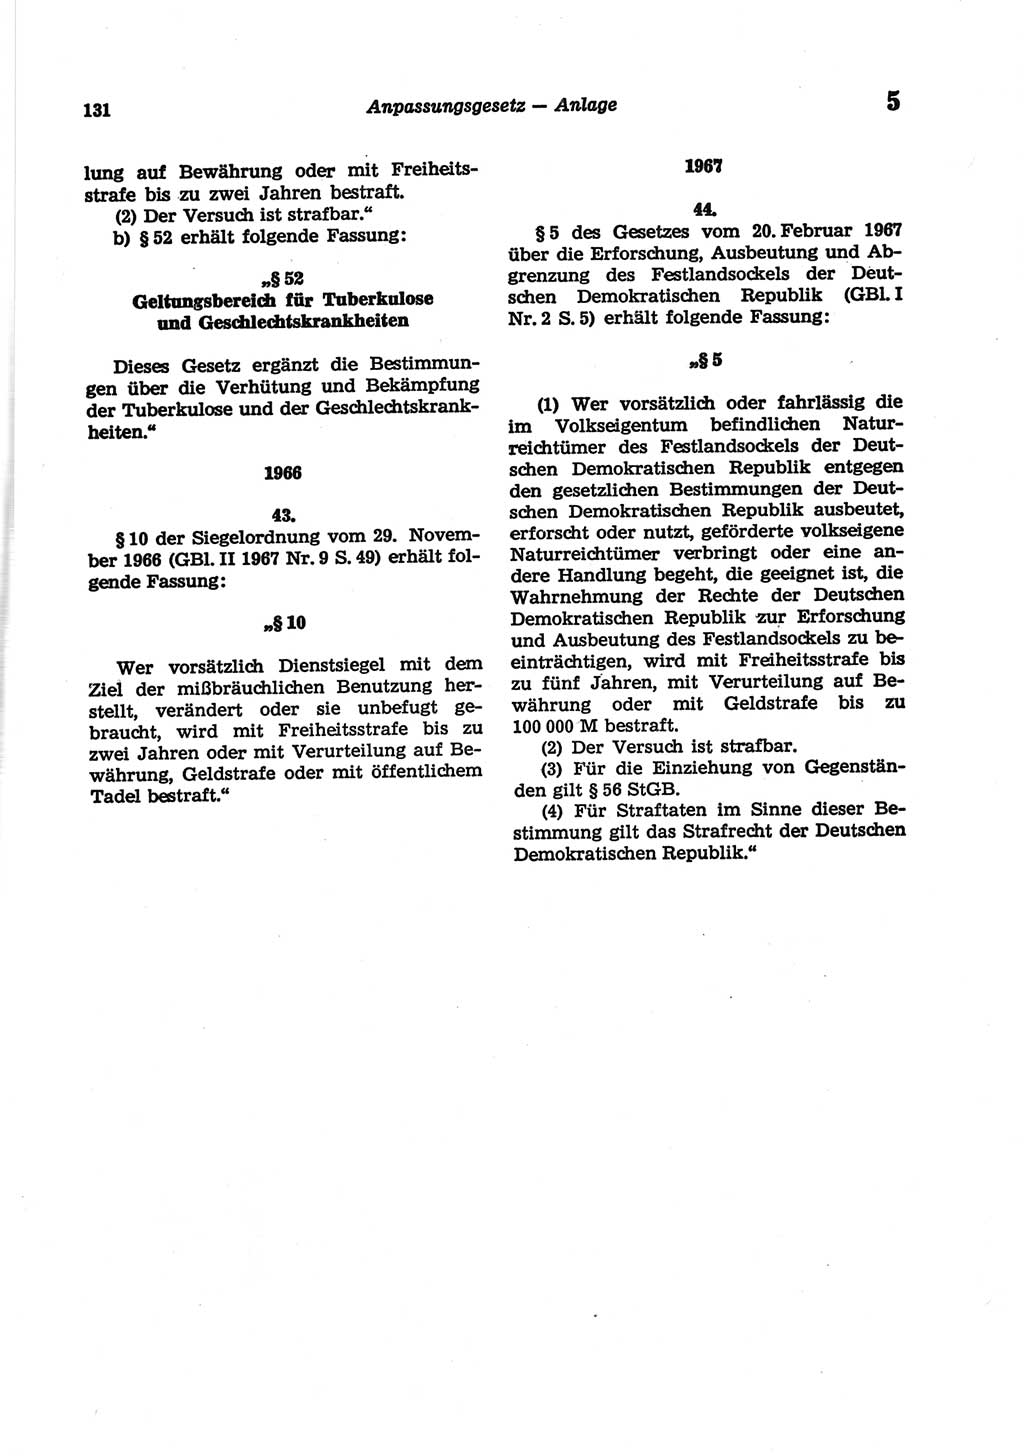 Strafgesetzbuch (StGB) der Deutschen Demokratischen Republik (DDR) und angrenzende Gesetze und Bestimmungen 1977, Seite 131 (StGB DDR Ges. Best. 1977, S. 131)